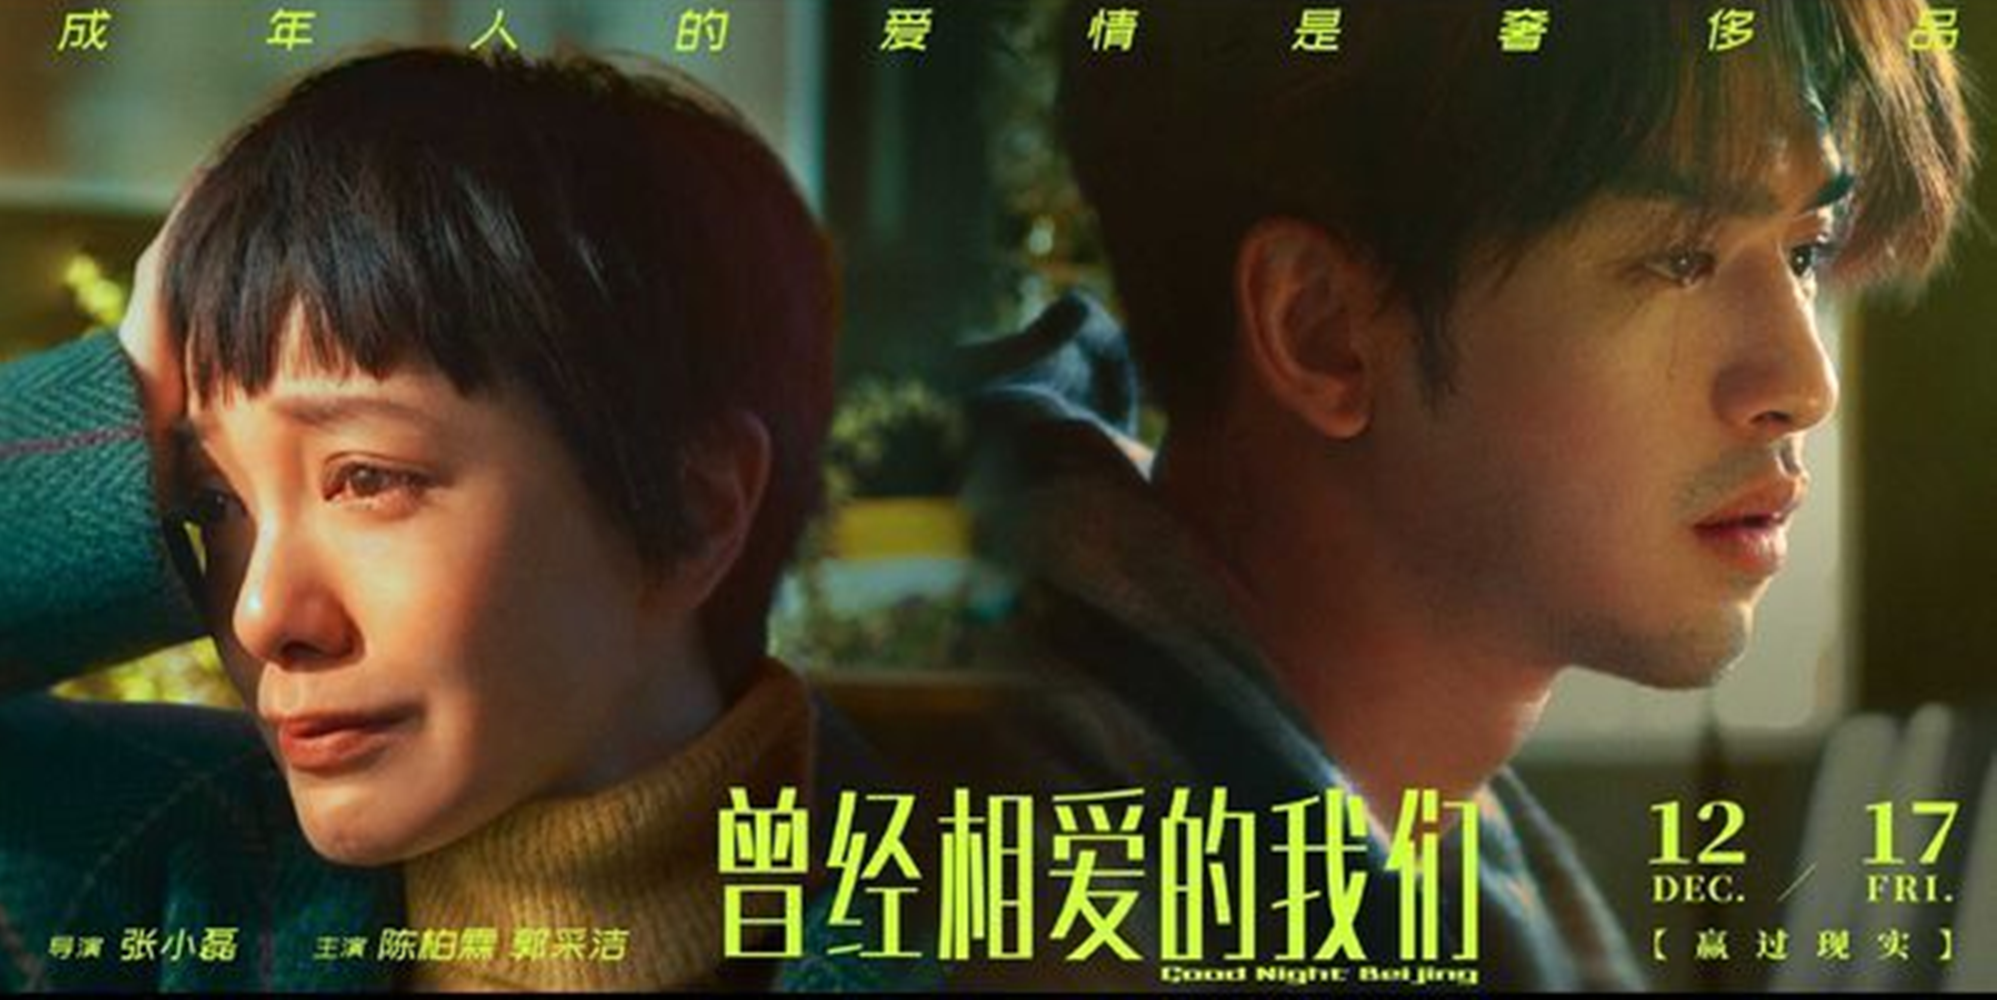 《北京愛情圖鑒》又將電影片名改為《曾經相愛的我們》，預定在12月17日上映